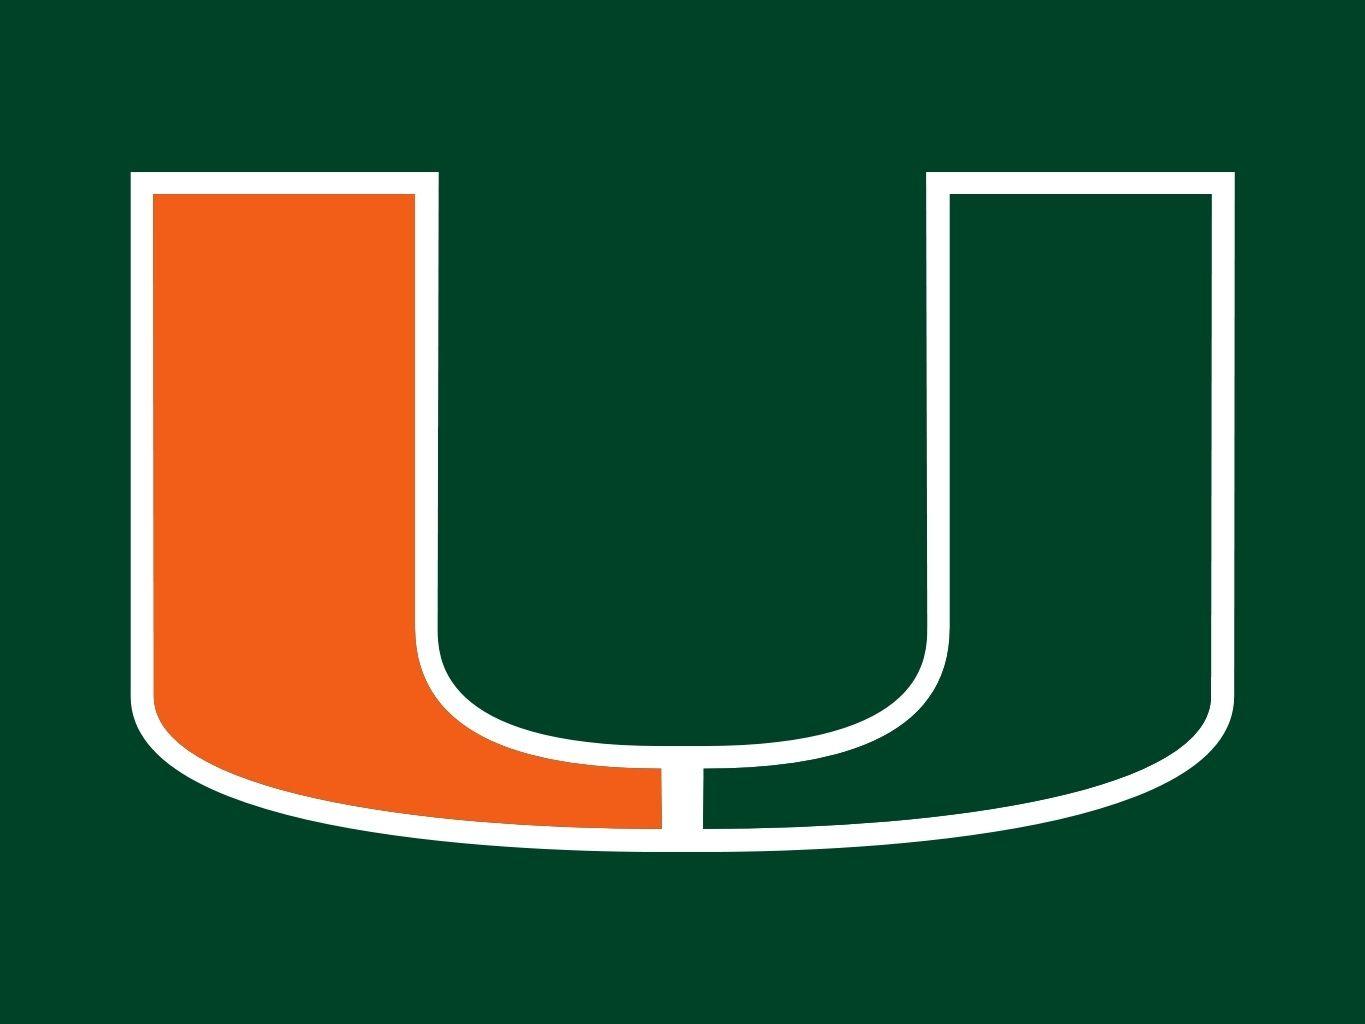 University of Miami Logo - University of Miami Hurricanes | Go Canes | Miami hurricanes, Miami ...